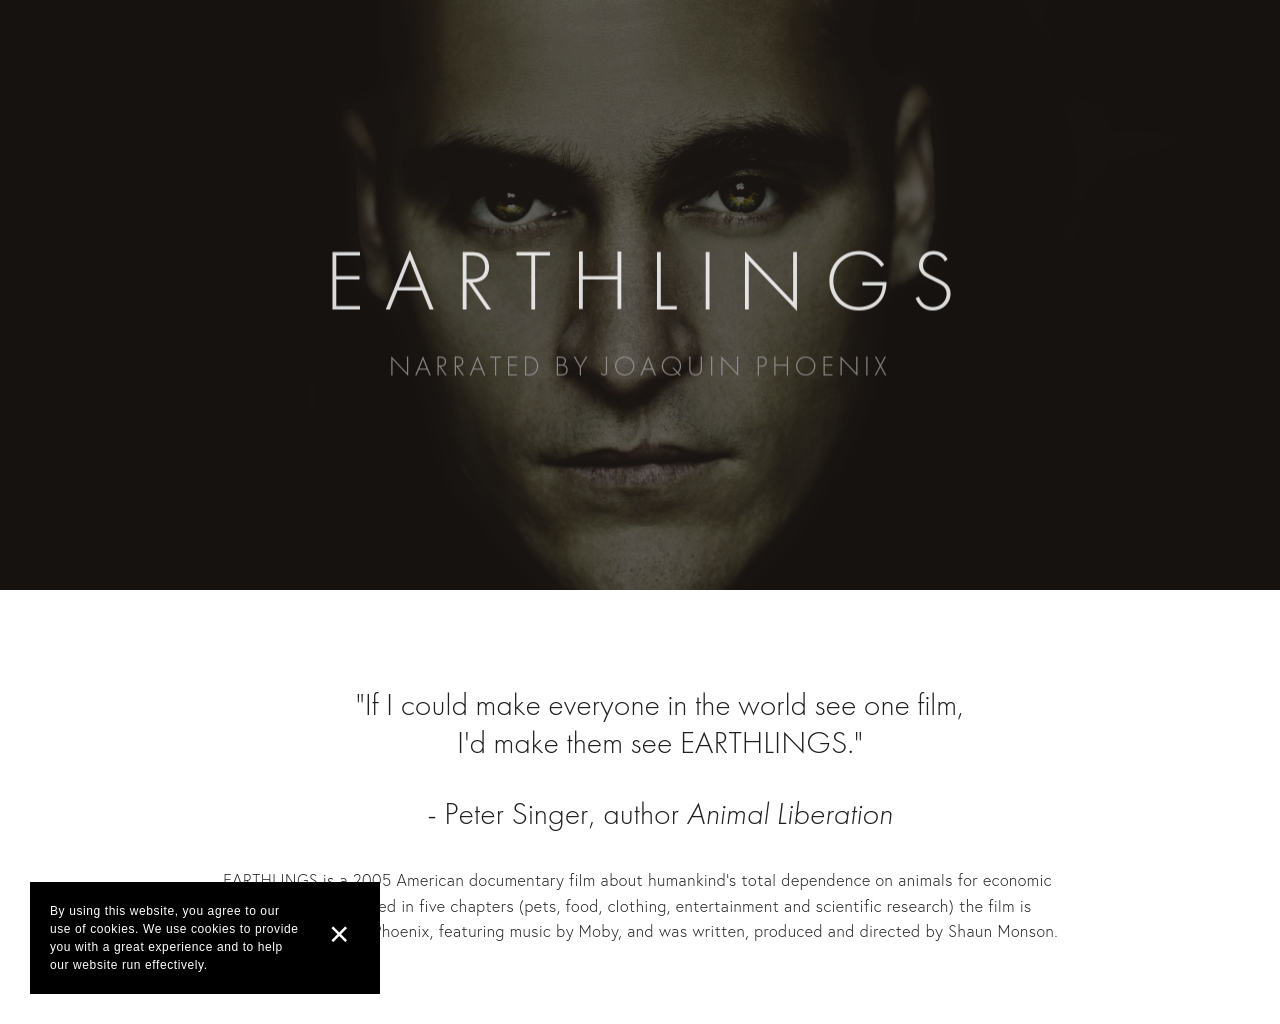 earthlings.com